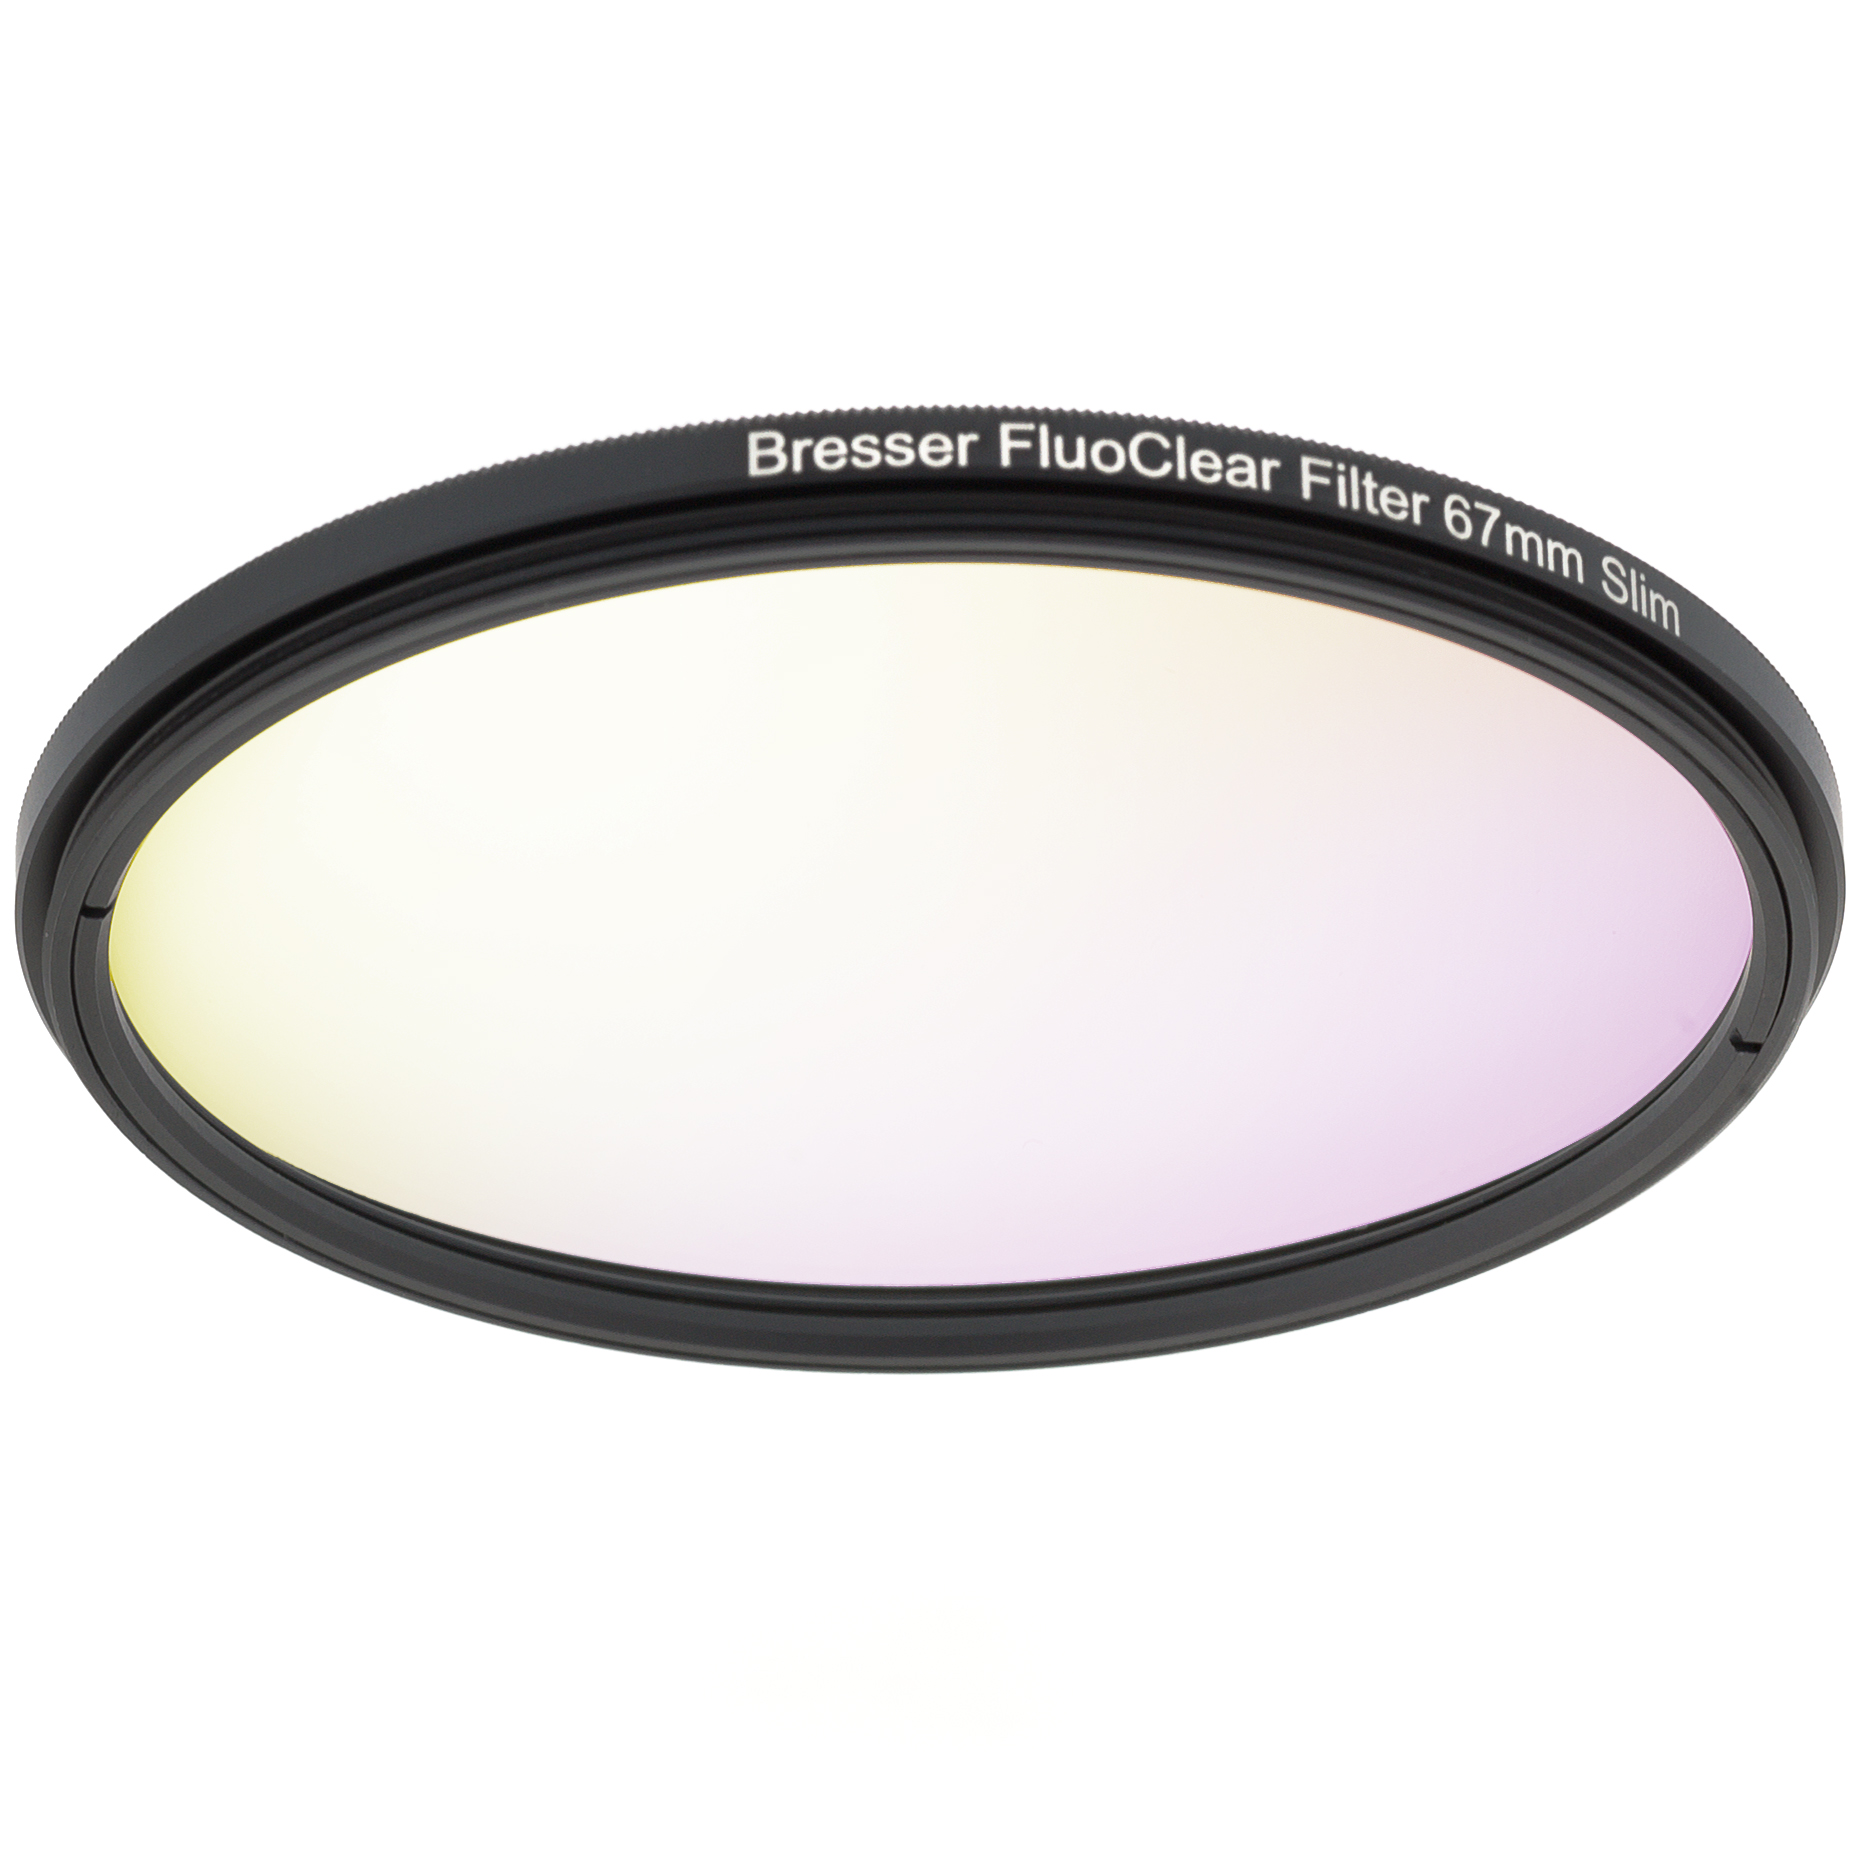 BRESSER FluoClear Filtro per fluorescenza 67 mm Slim